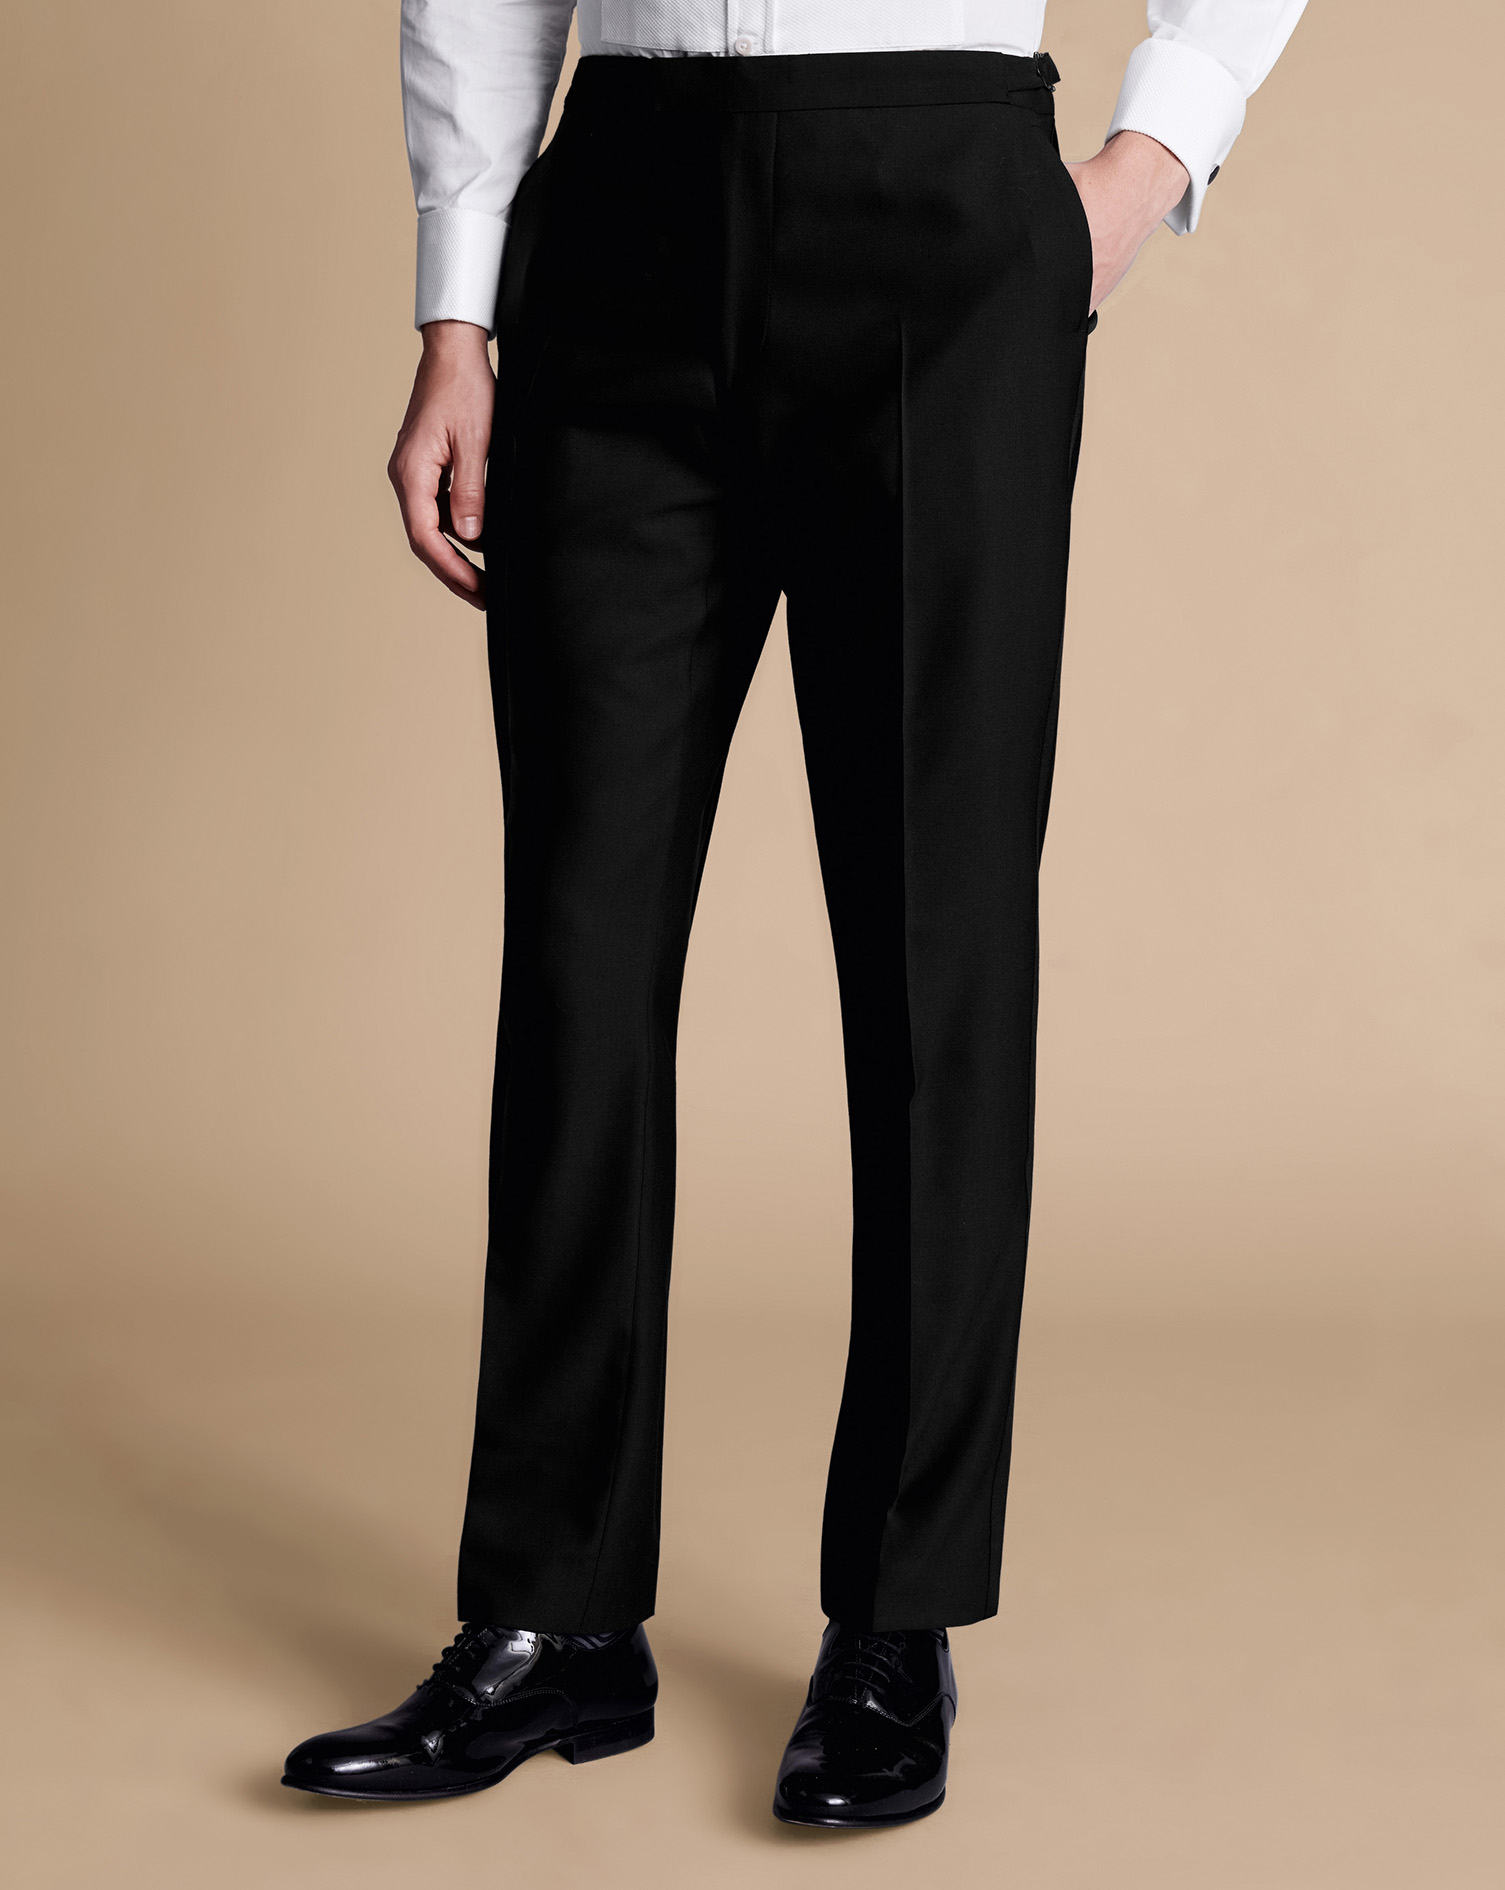 Men's Charles Tyrwhitt Dinner Suit Trousers - Black Size 36/30 Wool
